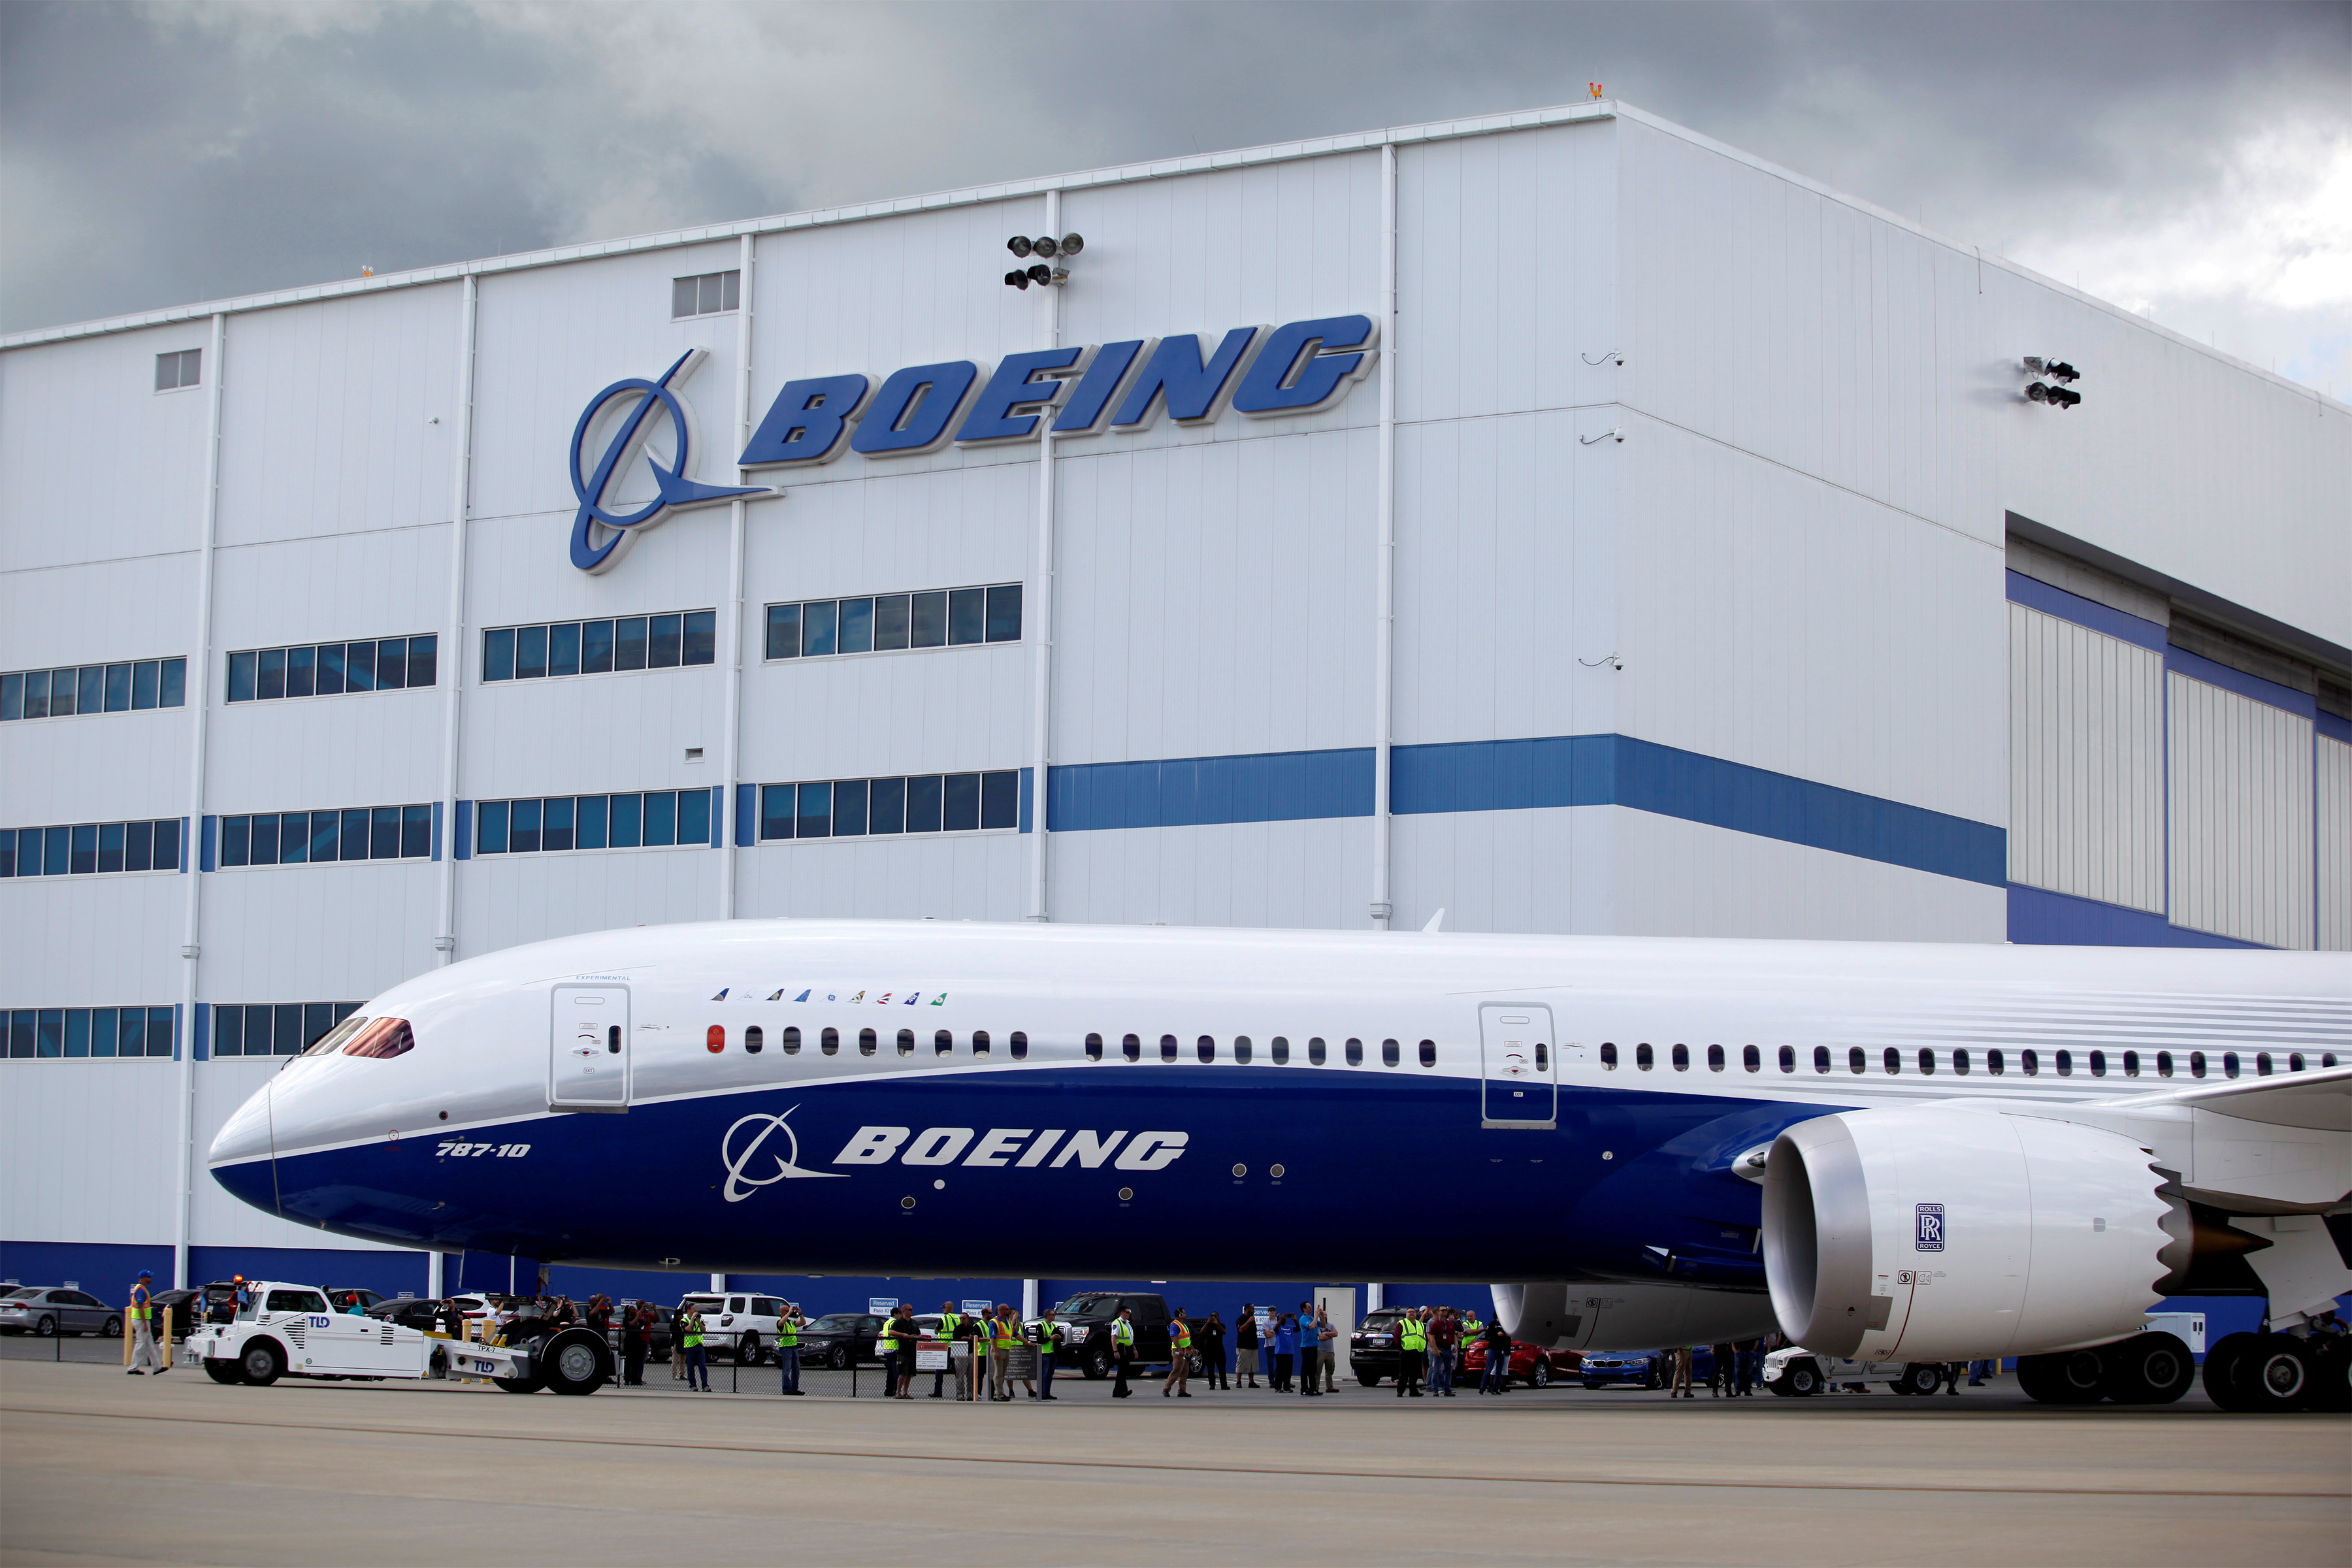 Un ingénieur de Boeing accuse : les tronçons du fuselage du 787 « sont incorrectement attachés et pourraient se dissocier les uns des autres en plein vol »